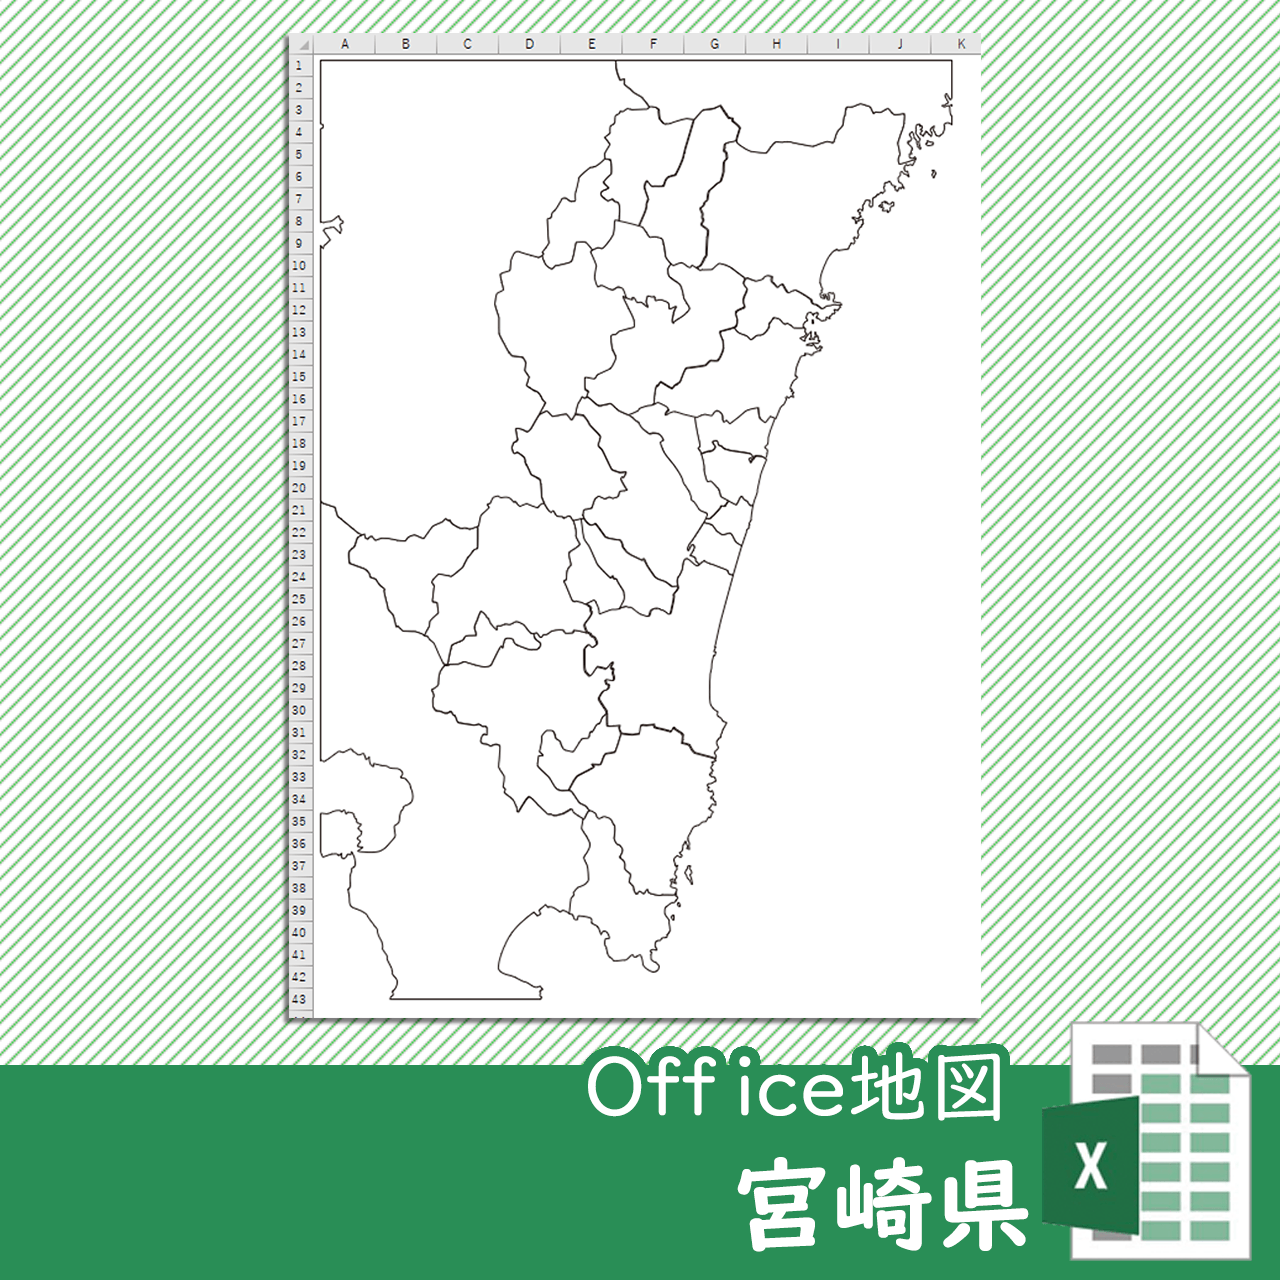 宮崎県のOffice地図のサムネイル